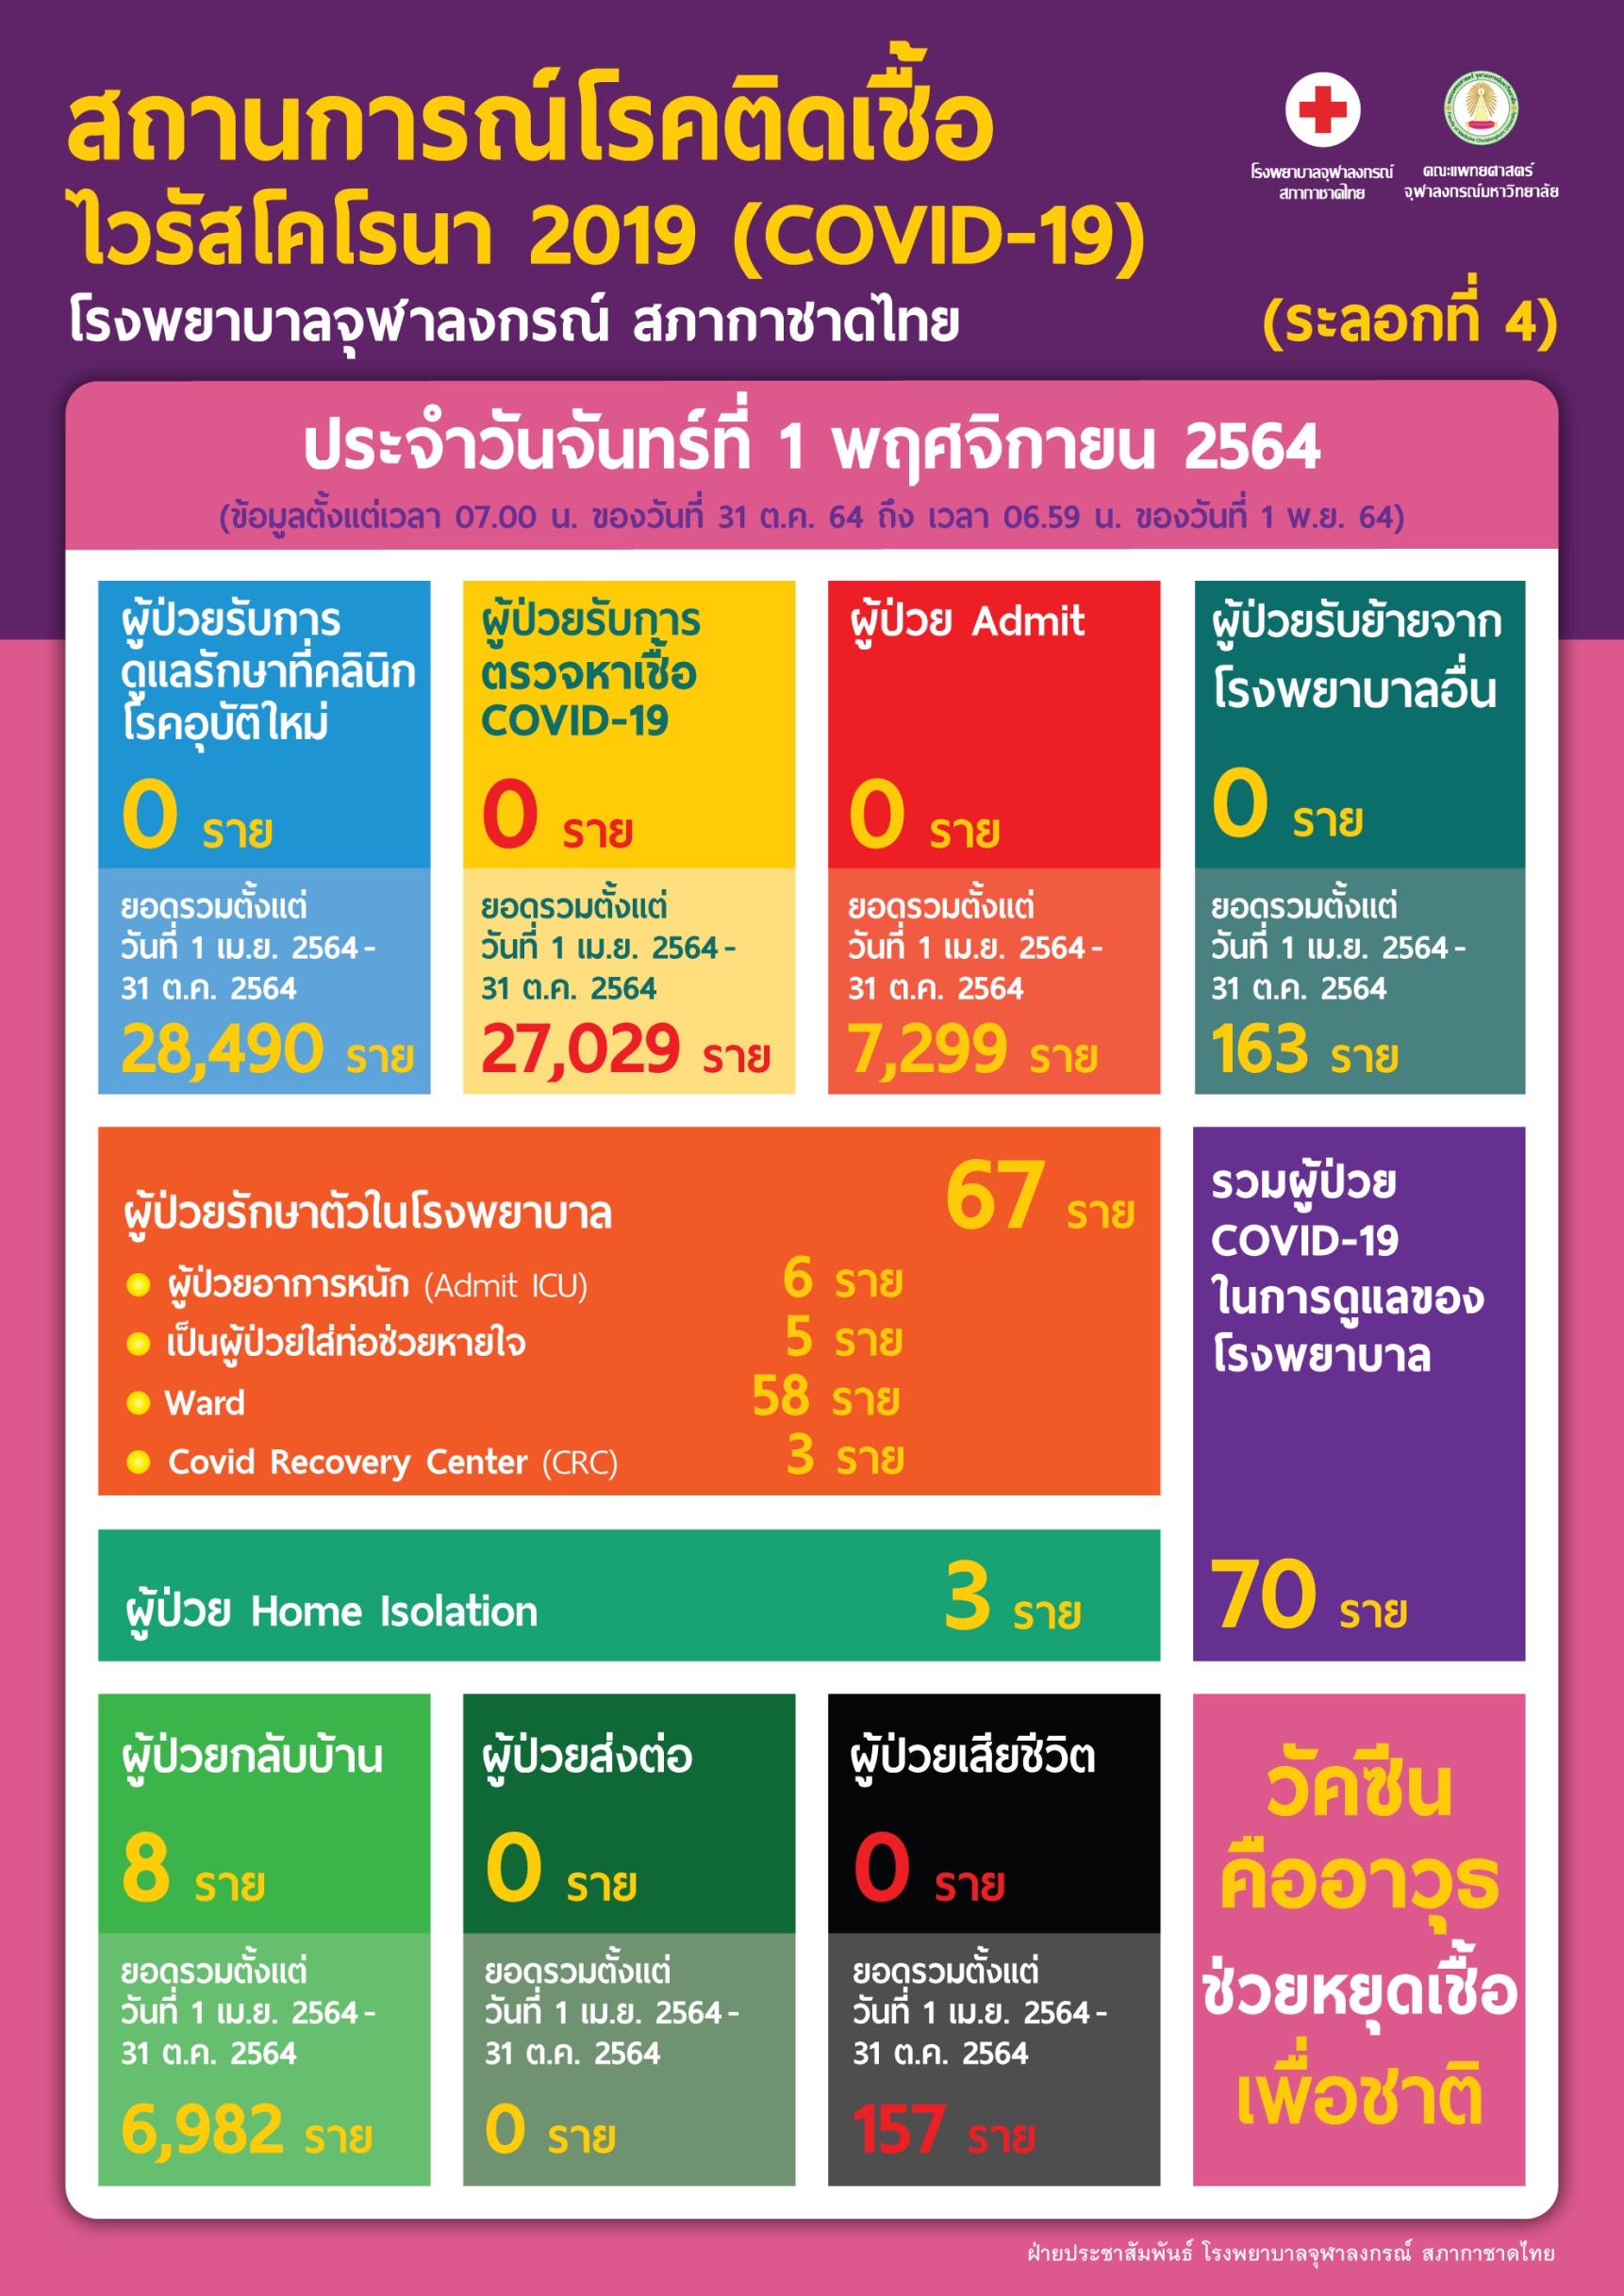 สถานการณ์โรคติดเชื้อไวรัสโคโรนา 2019 (COVID-19) (ระลอกที่ 4) โรงพยาบาลจุฬาลงกรณ์ สภากาชาดไทย ประจำวันอาทิตย์ที่ 31 ตุลาคม 2564